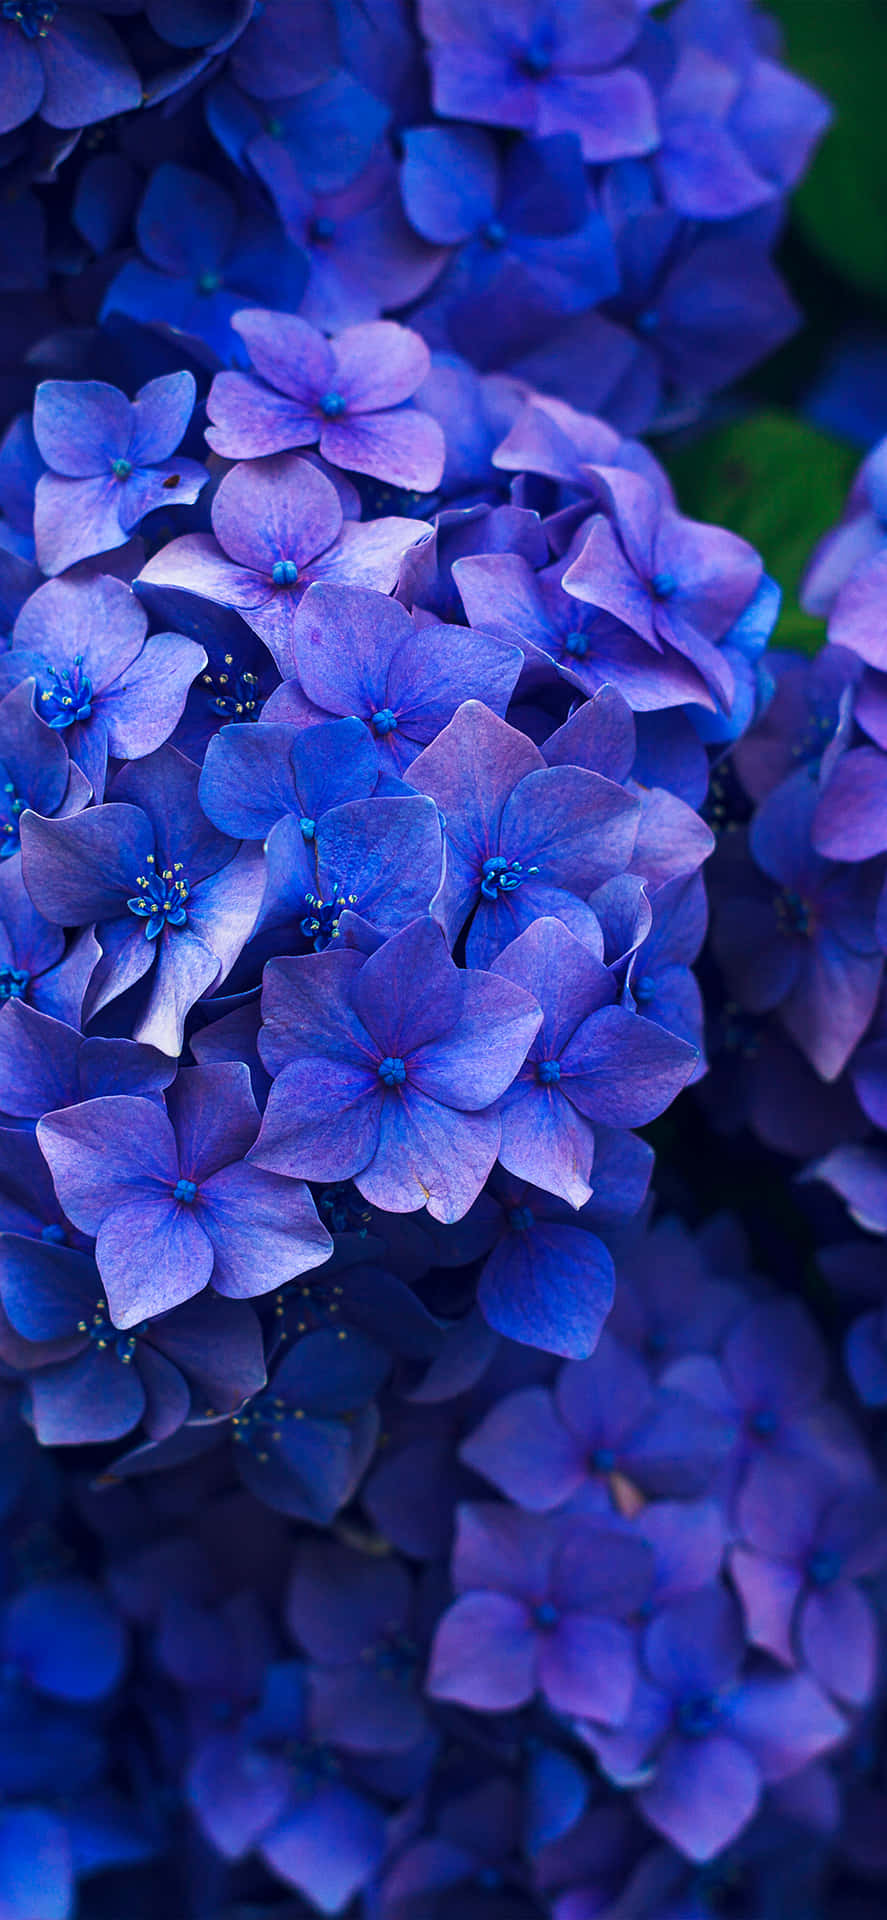 Imagemde Flores Hortênsias Azuis Escuras Como Papel De Parede Para Computador Ou Celular.